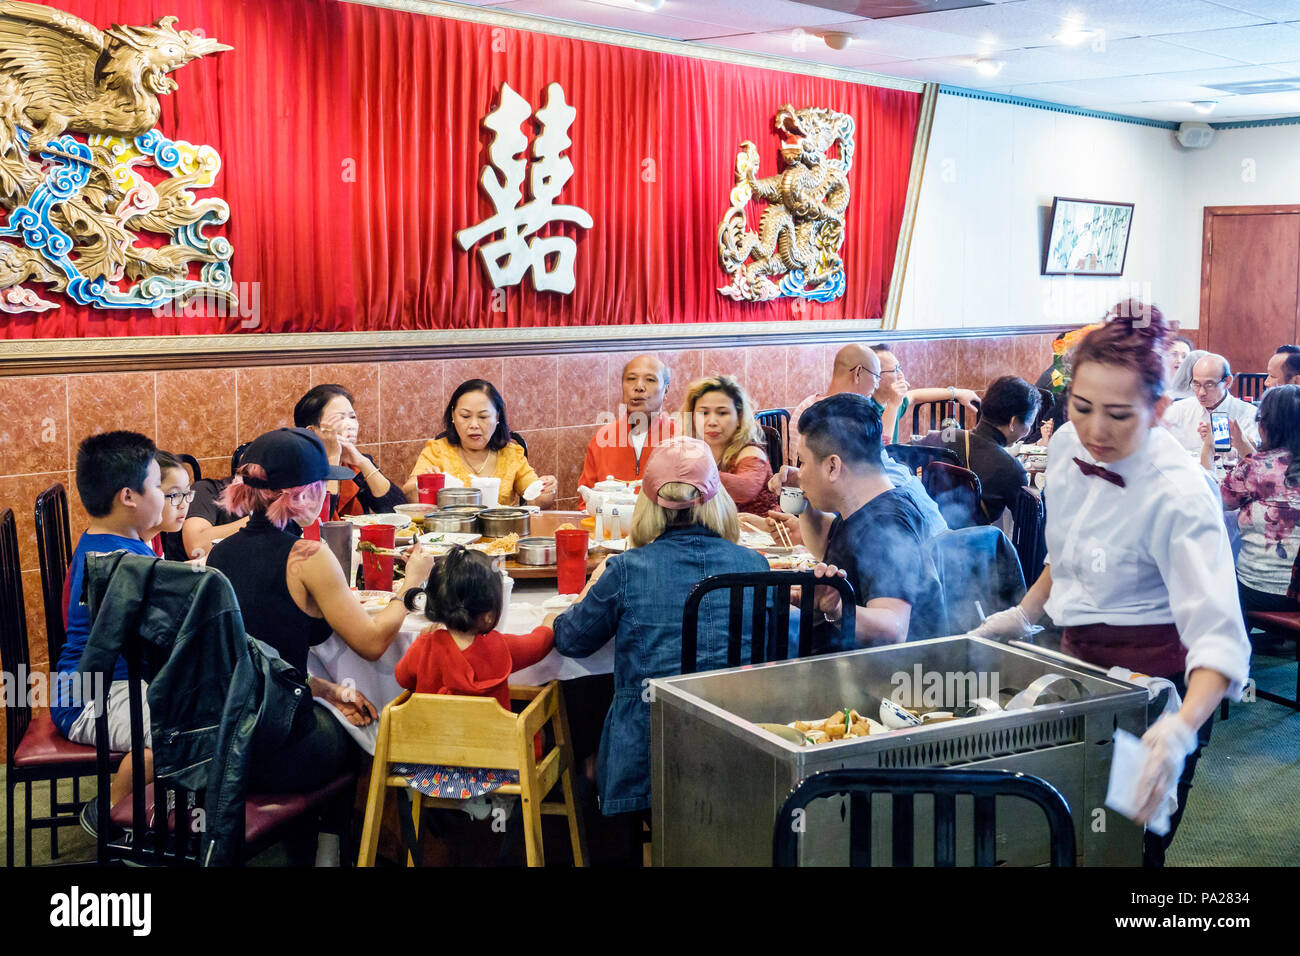 Orlando Florida, Chinatown, Lam's Garden Chinese, restaurant restaurants cuisine café, dim sum, salle à manger, grande famille, table, asiatique homme hommes hommes, femme fem Banque D'Images